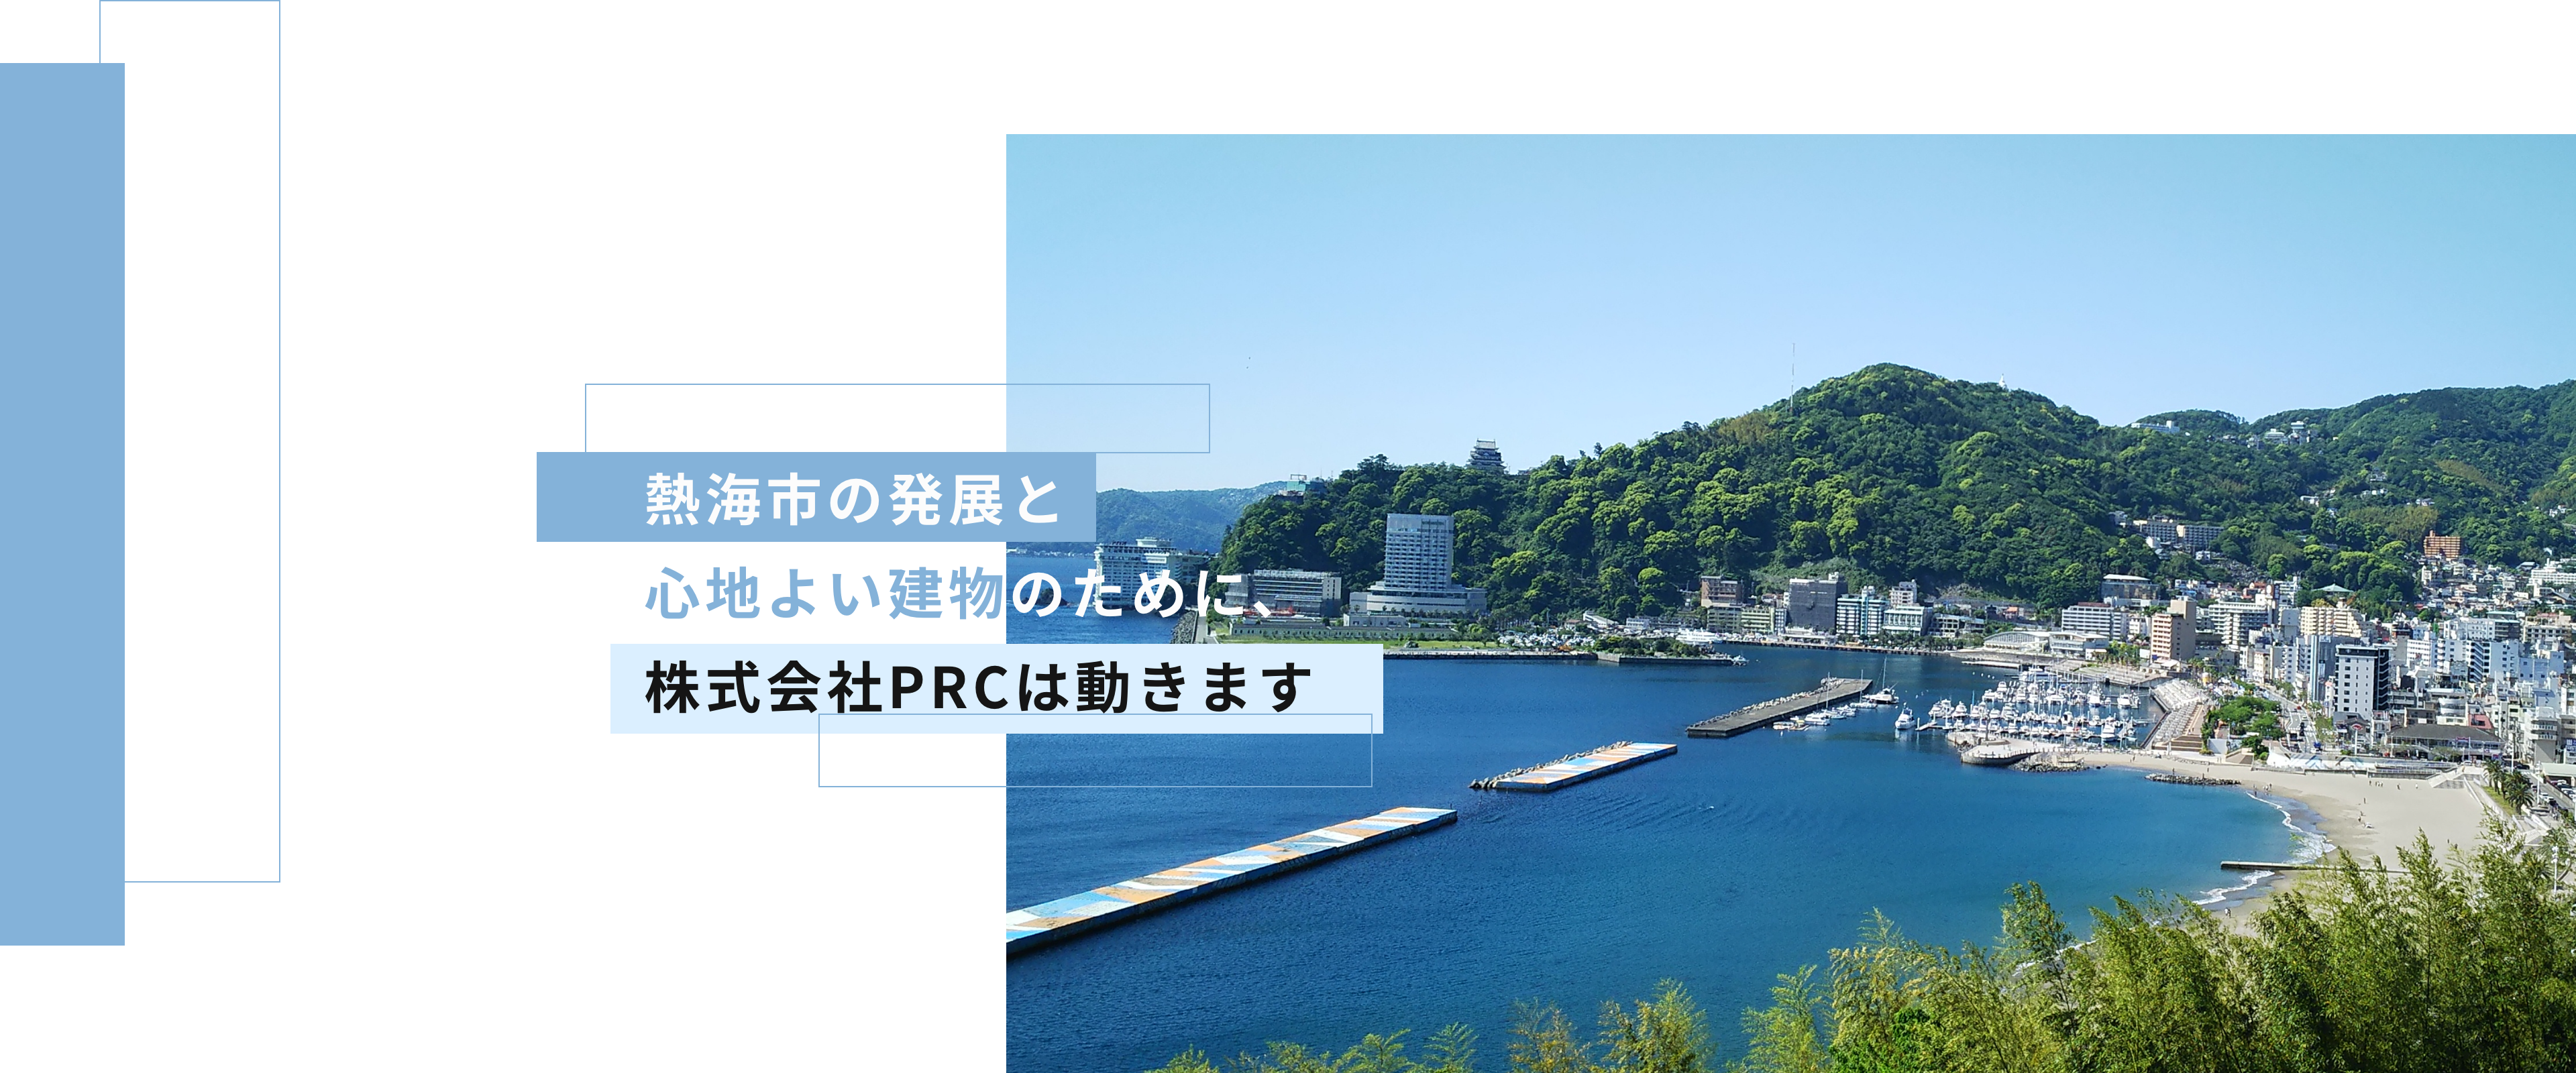 熱海の発展と心地よい建物のために、株式会社PRCは動きます。